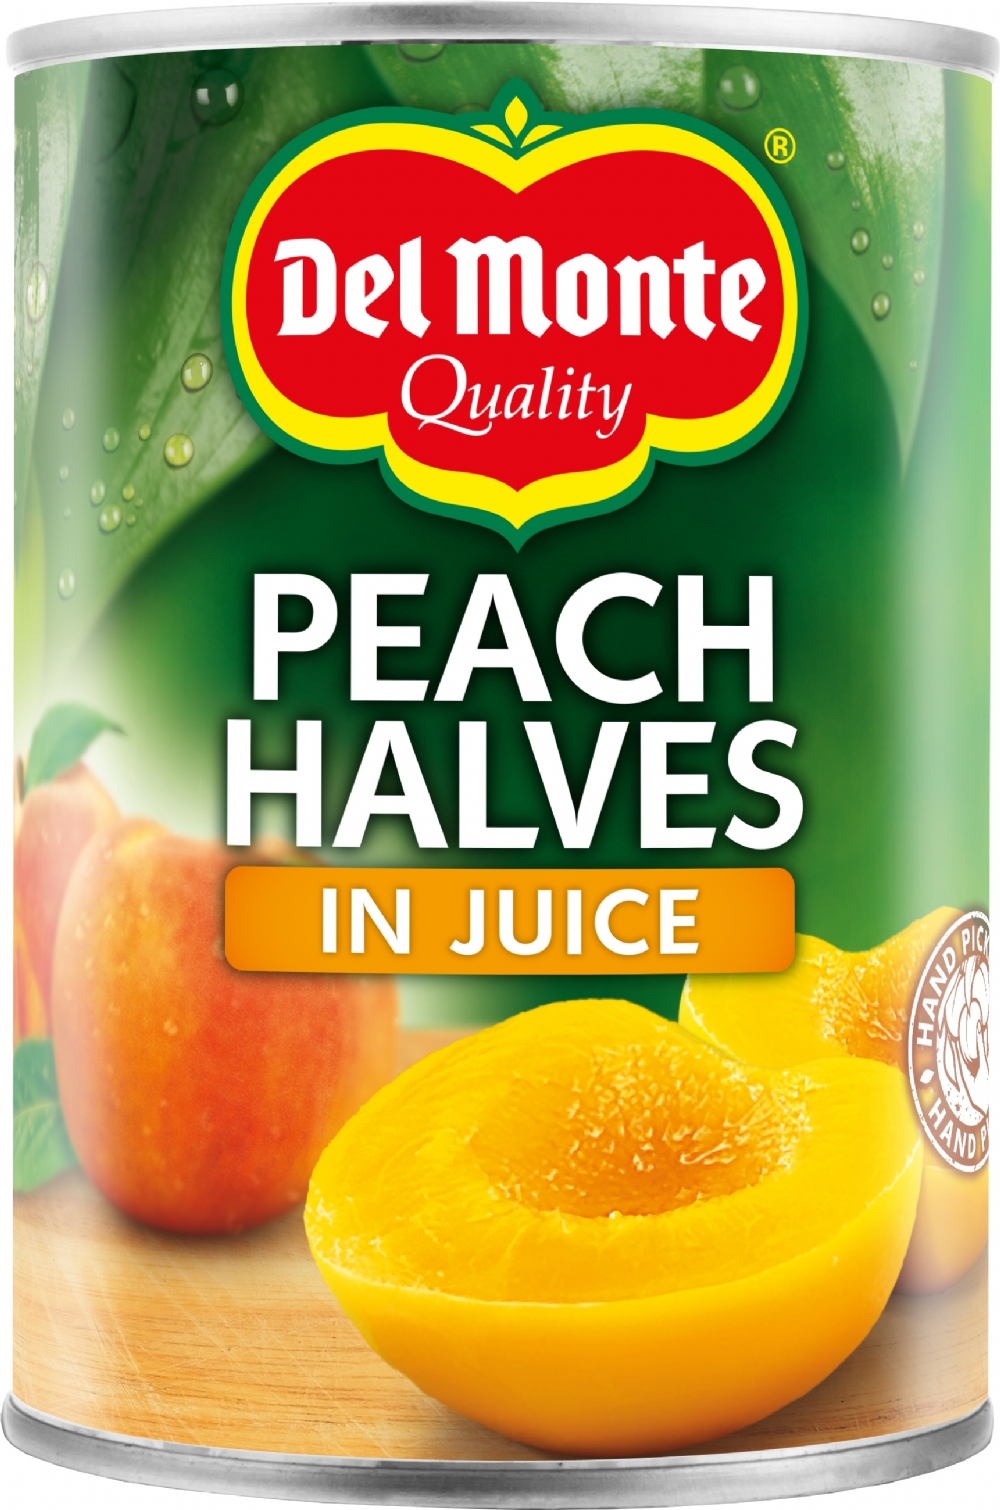 DEL MONTE Peach Halves in Juice 415g